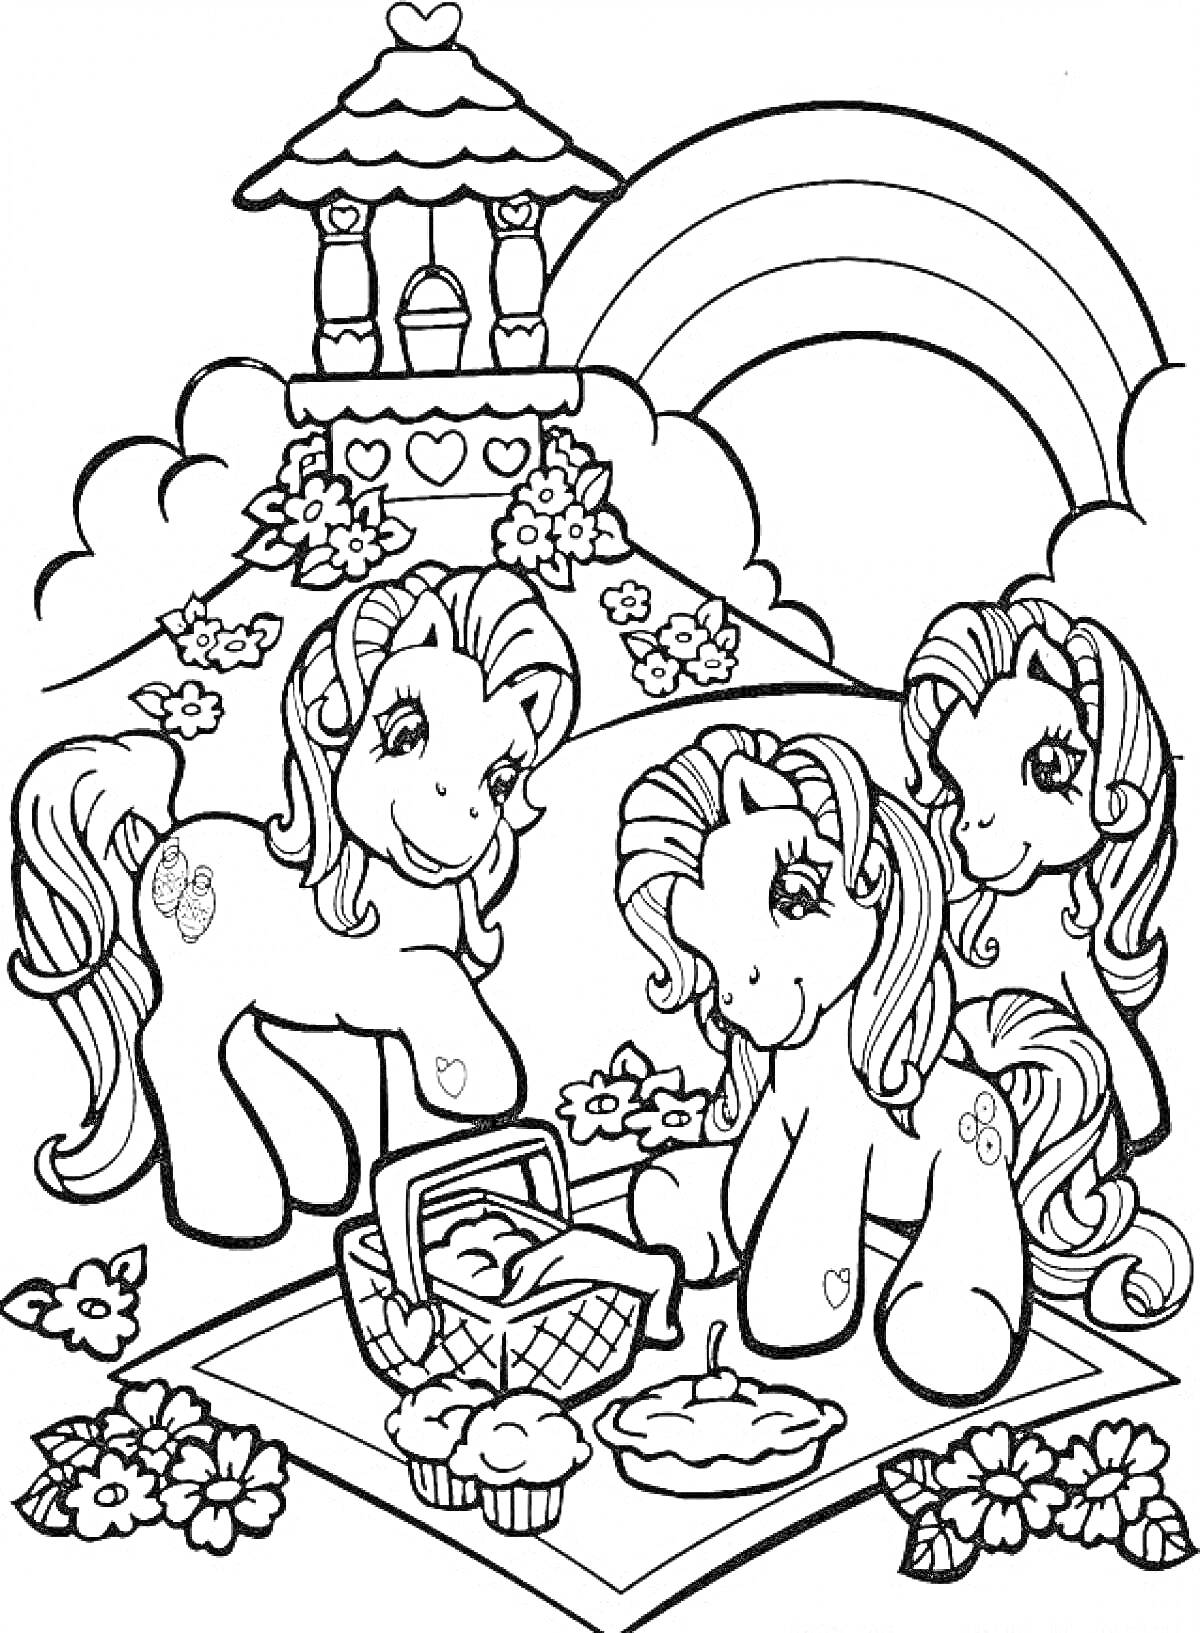 Раскраска Поход в Понивиль - три пони на пикнике с корзинкой для еды, пирогом, кексами, беседка, радуга, цветущие кусты